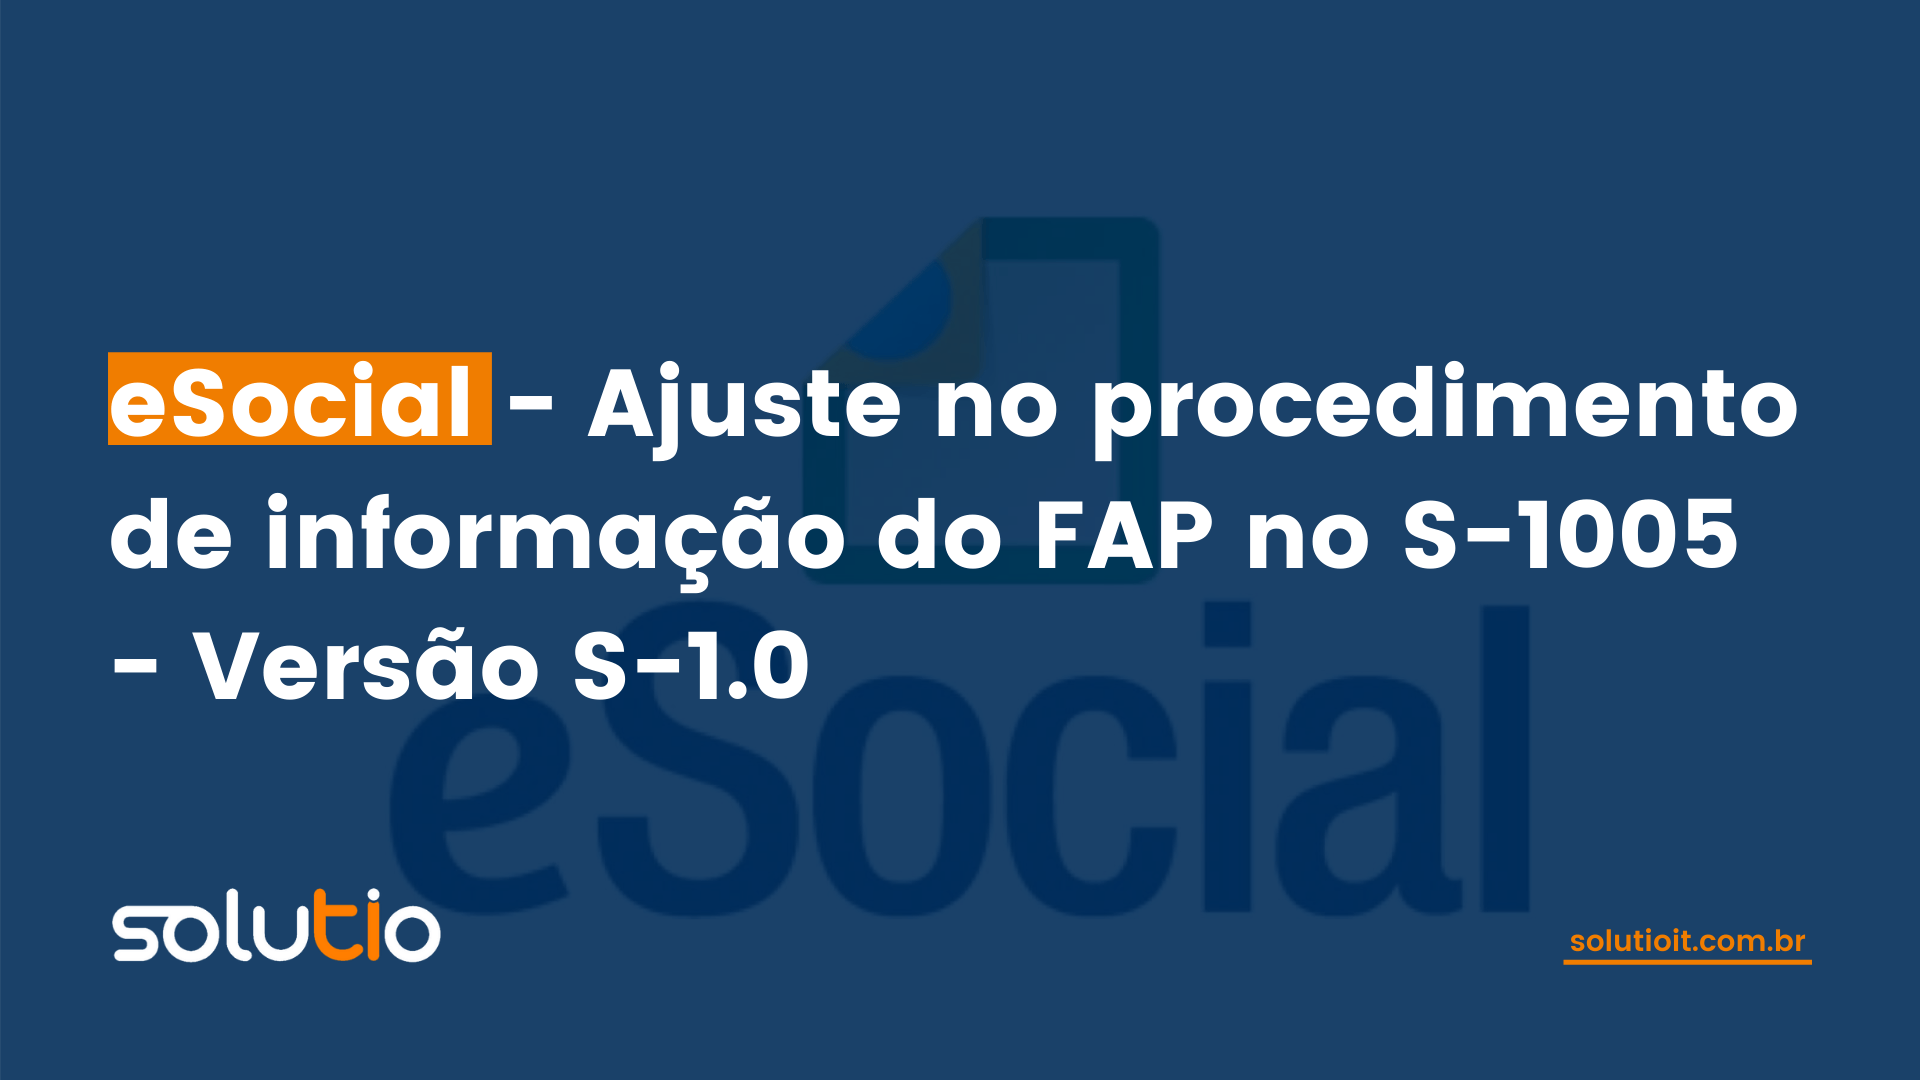 eSocial - Ajuste no procedimento de informação do FAP no S-1005 - Versão S-1.0